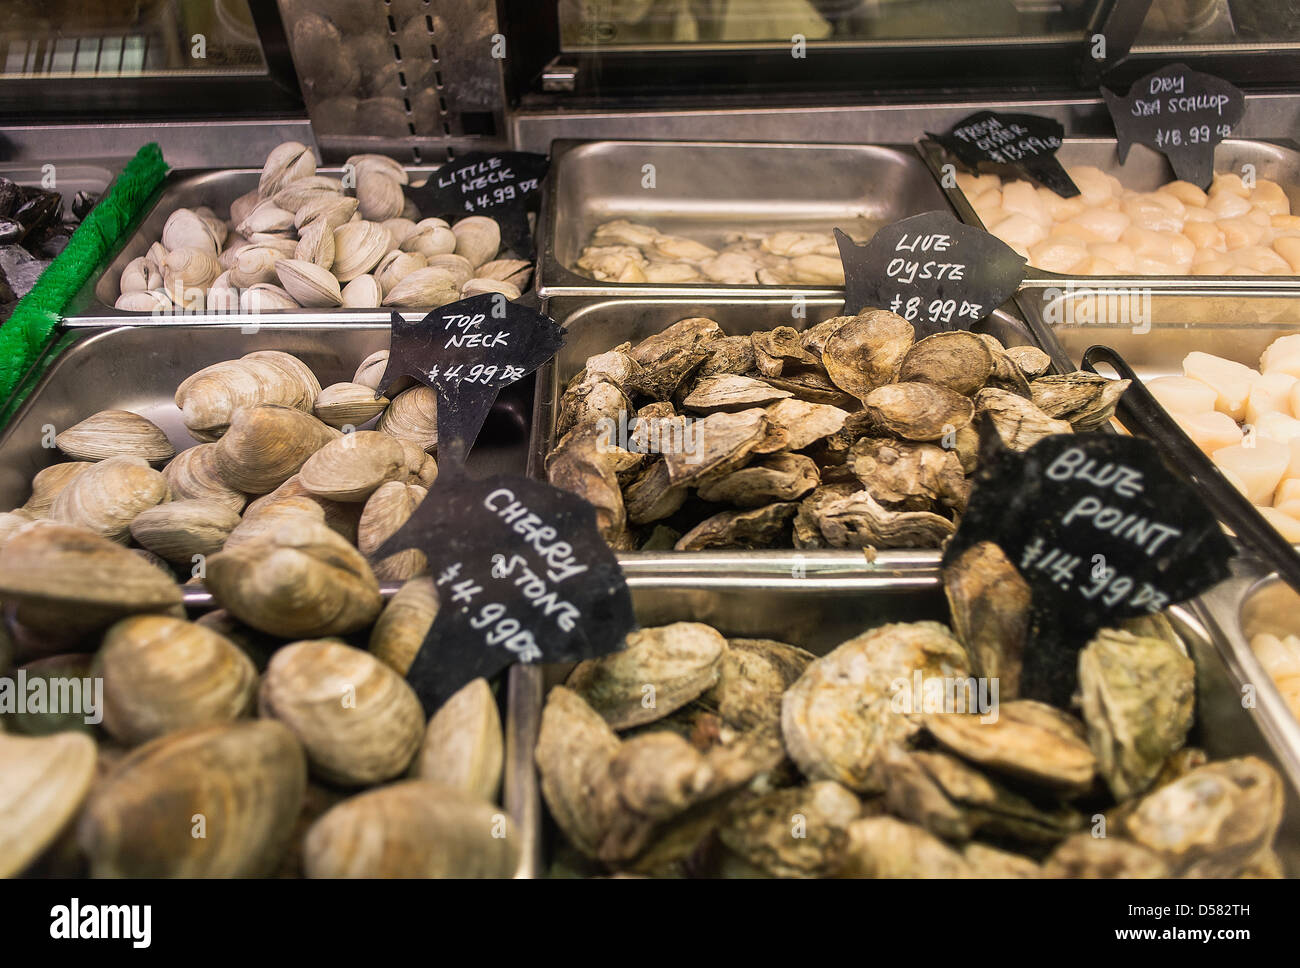 Shellfish display at a seafood market. Stock Photo